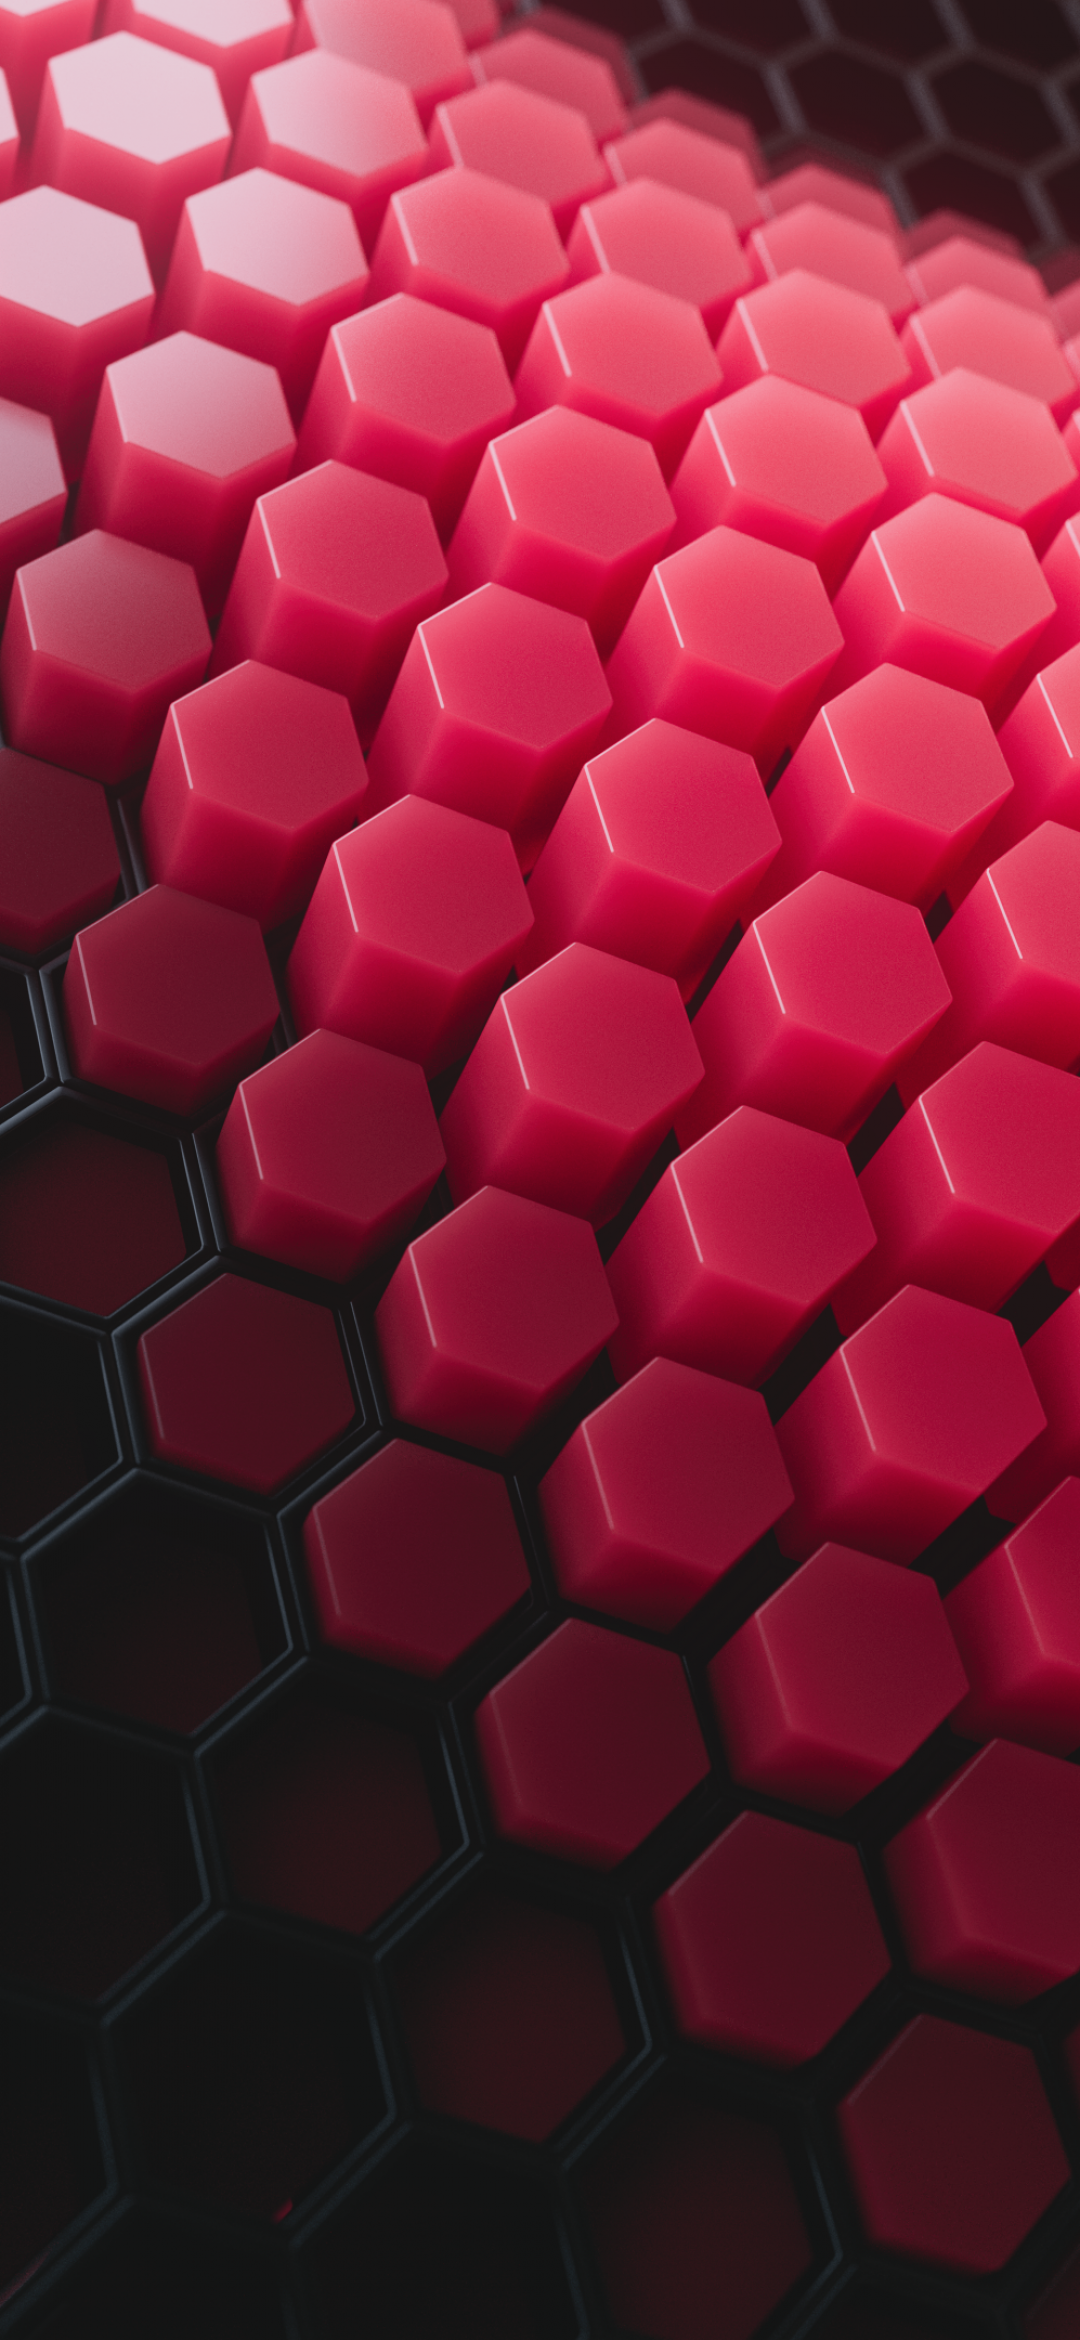 Để tạo ra một không gian sống động và hiện đại, hình nền Hexagon 4K là sự lựa chọn hoàn hảo. Được thiết kế độc đáo và màu sắc phong phú, bạn sẽ cảm thấy như đang sống trong một không gian đầy màu sắc và sáng tạo. Hãy chọn một hình để thưởng thức!